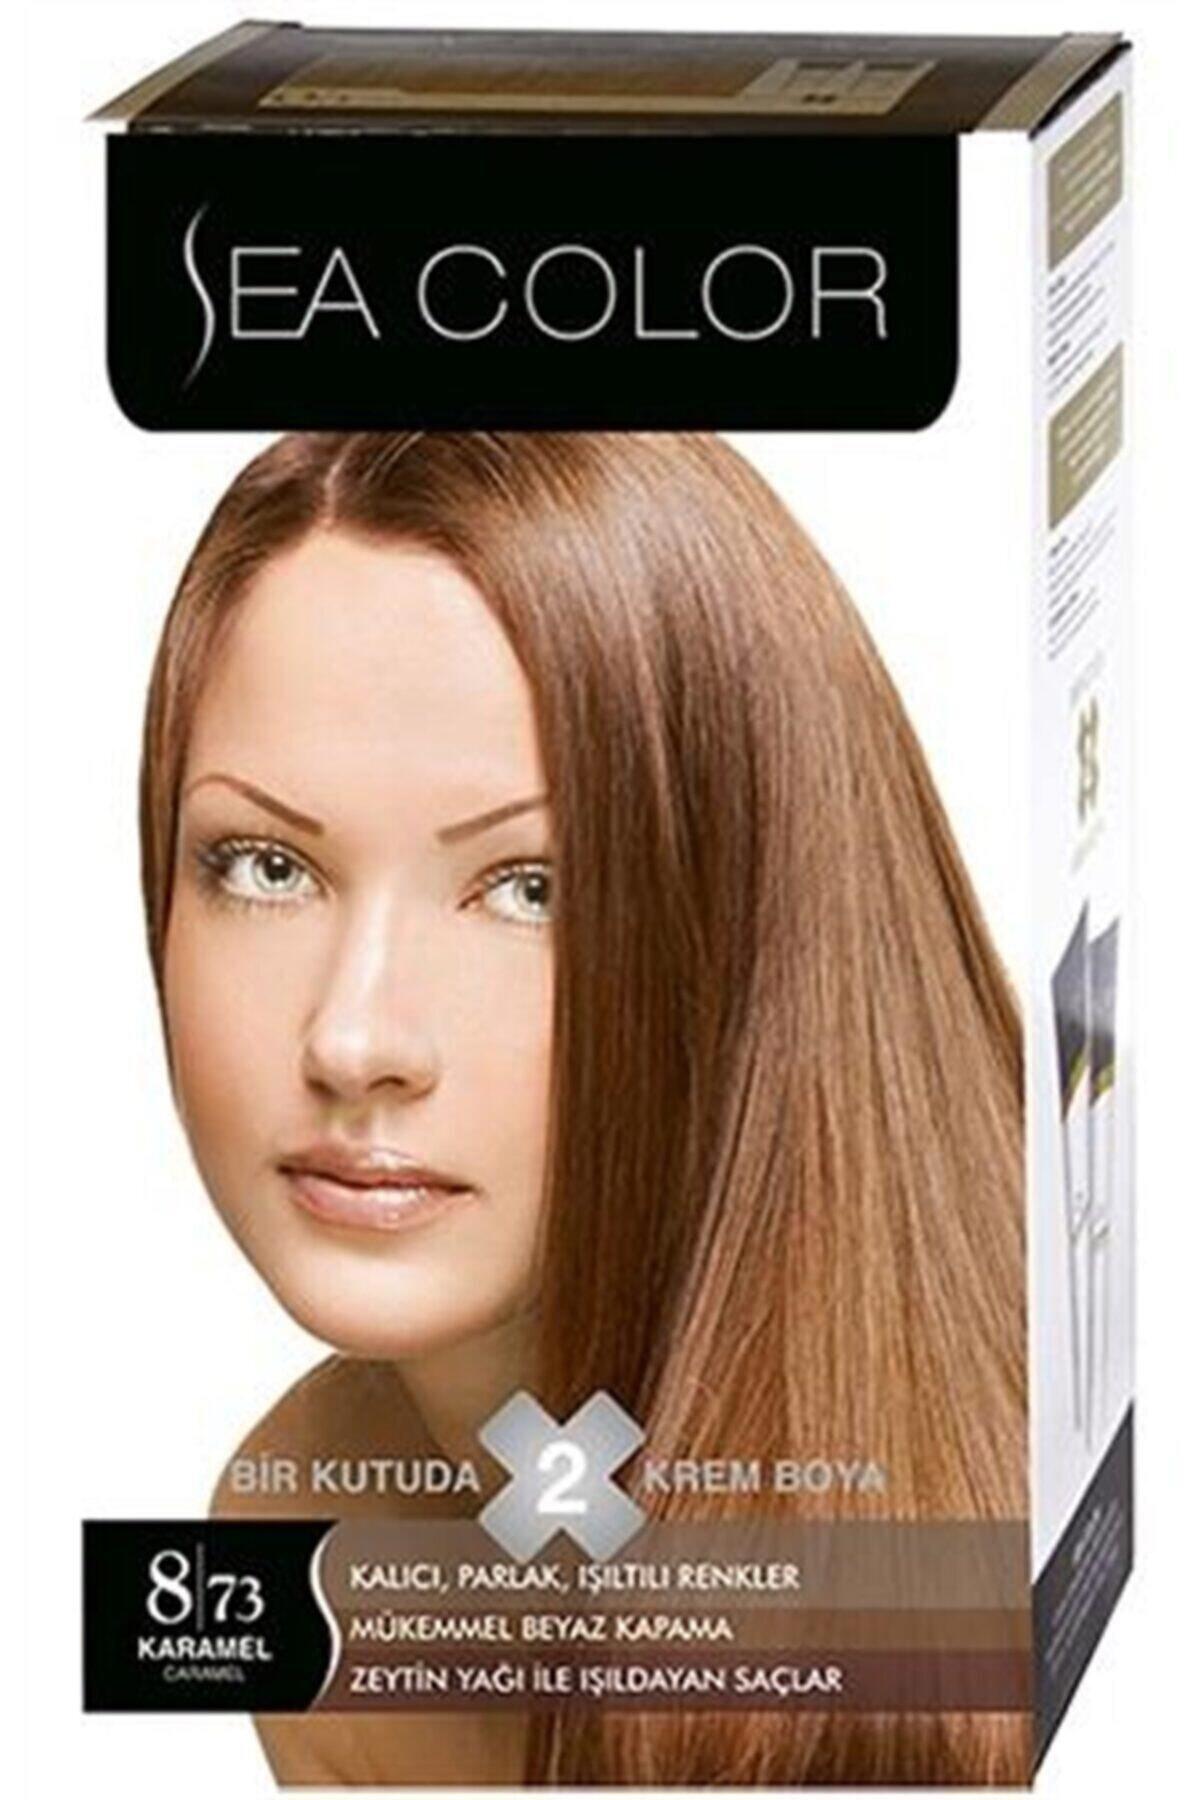 Sea Color 8.73 Karamel Krem Saç Boyası